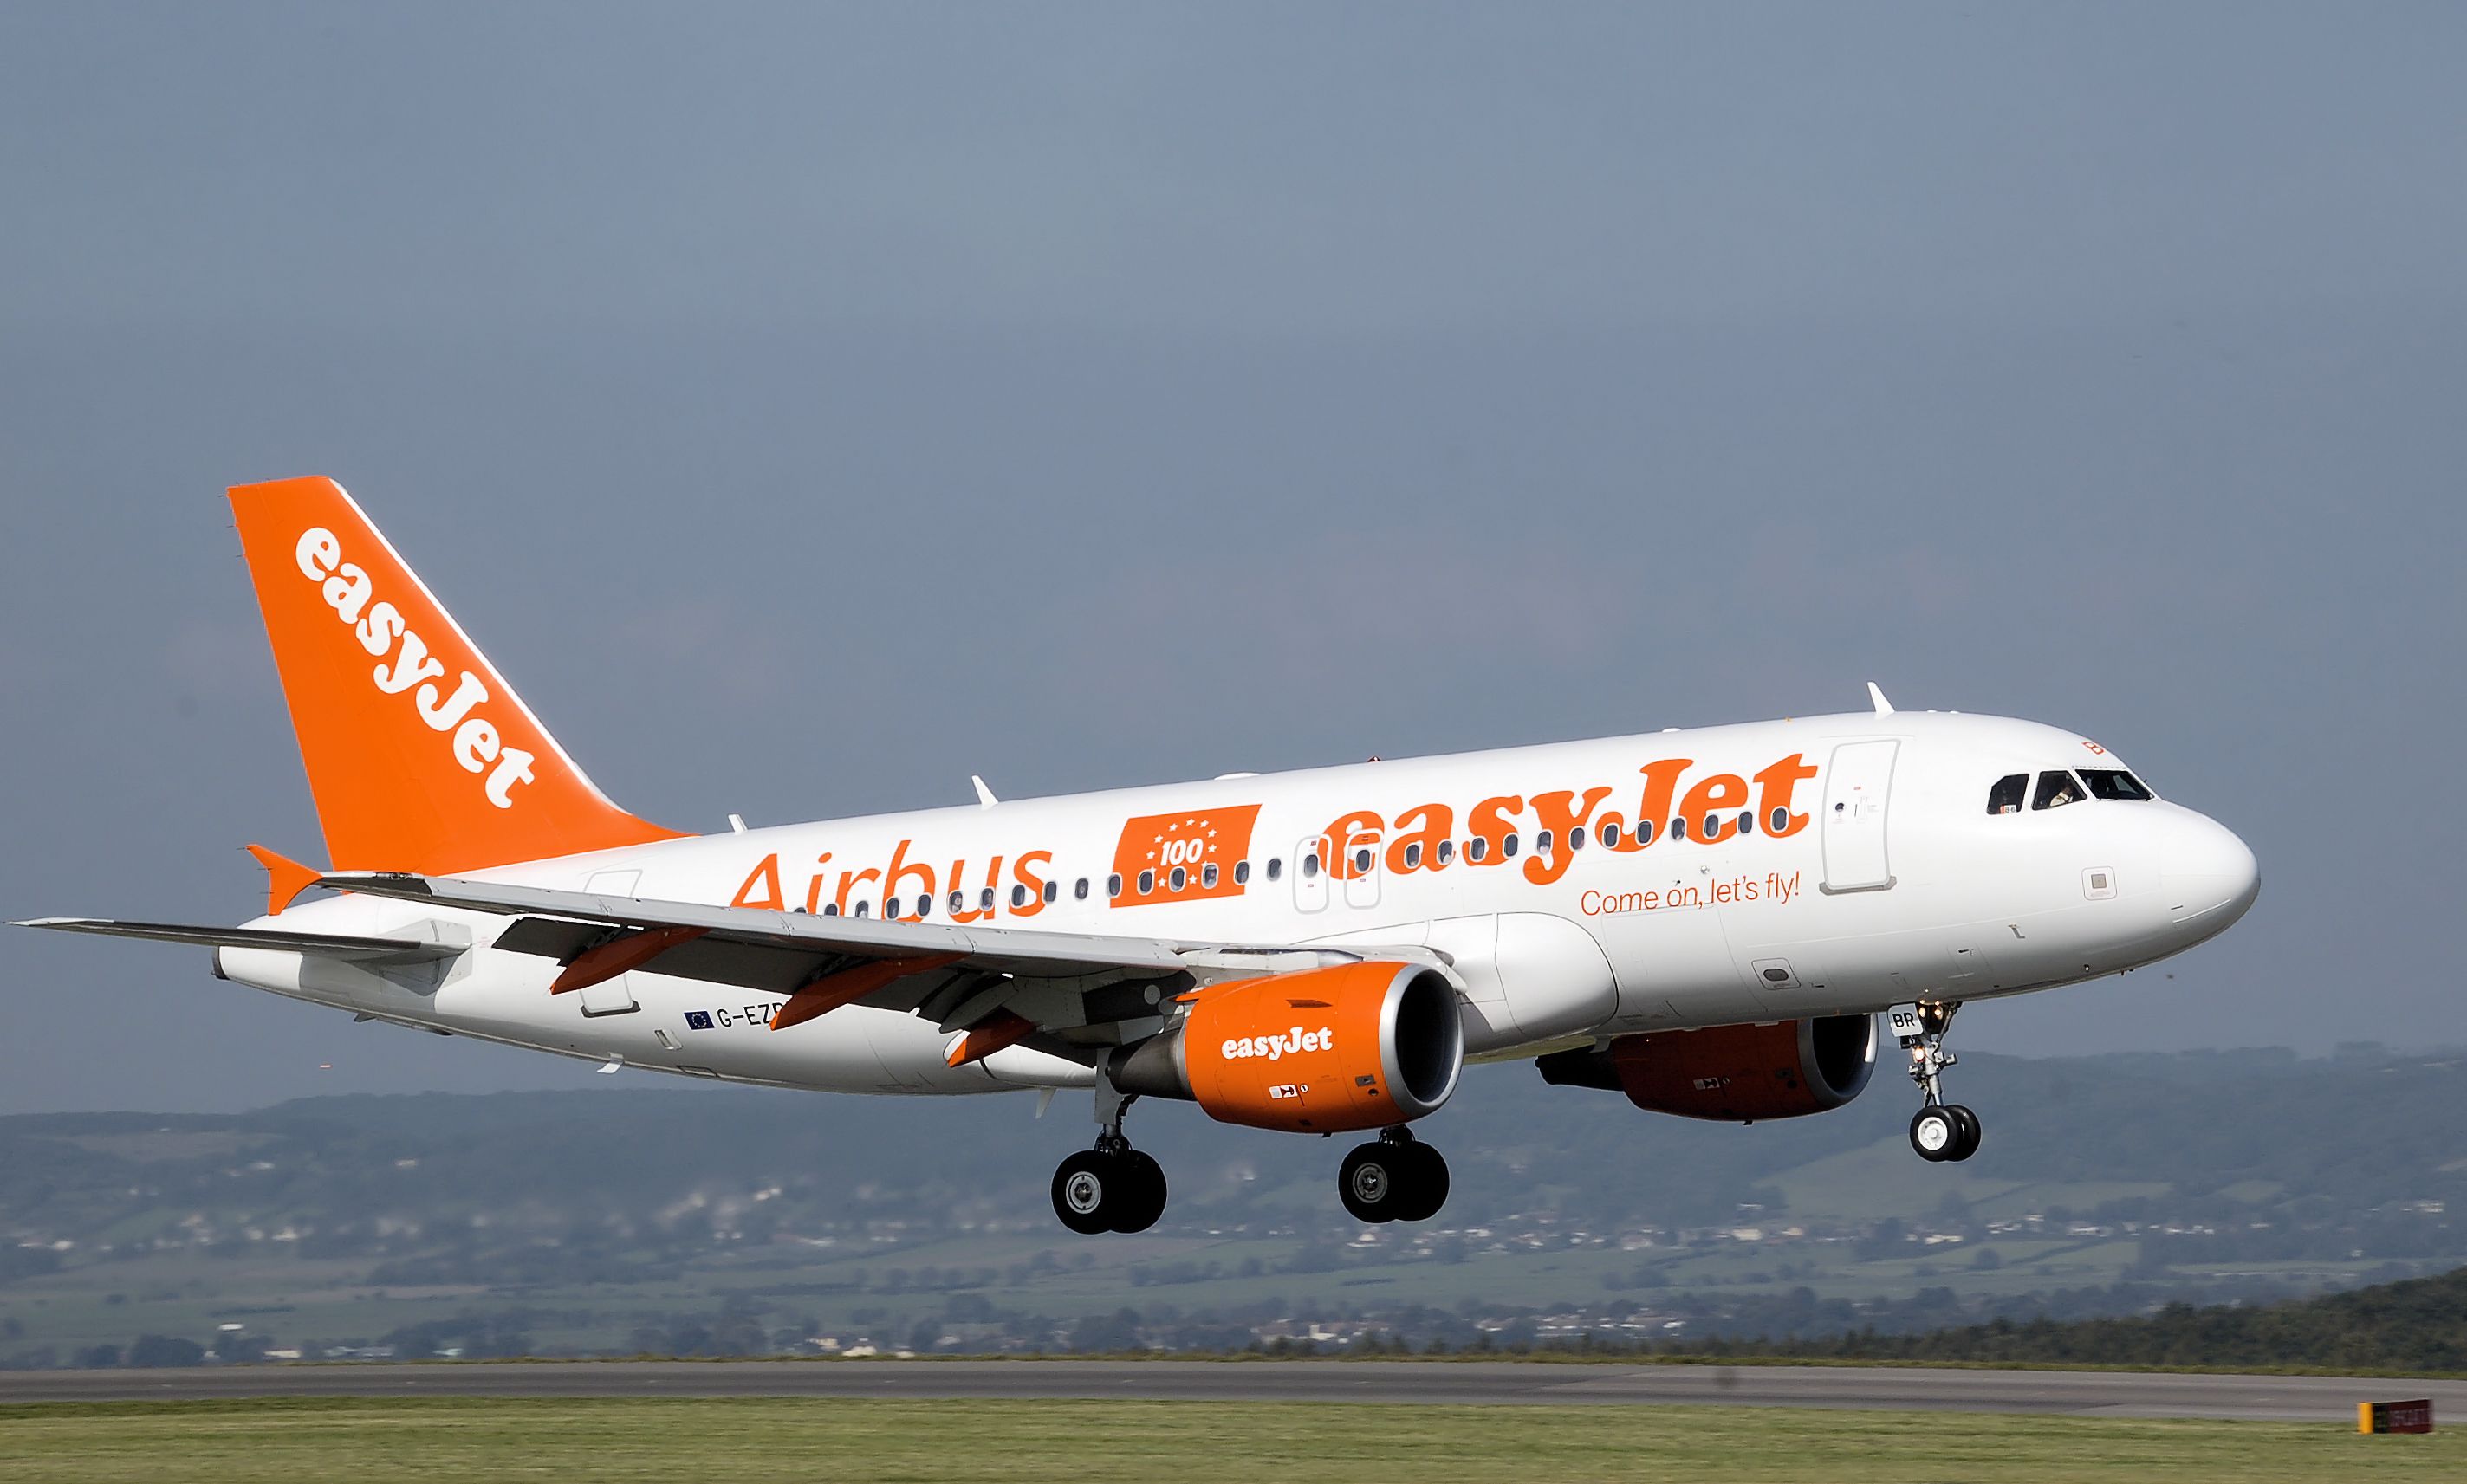 La vaga d'Easyjet provoca 14 cancel·lacions, 6 d'elles a l'aeroport del Prat